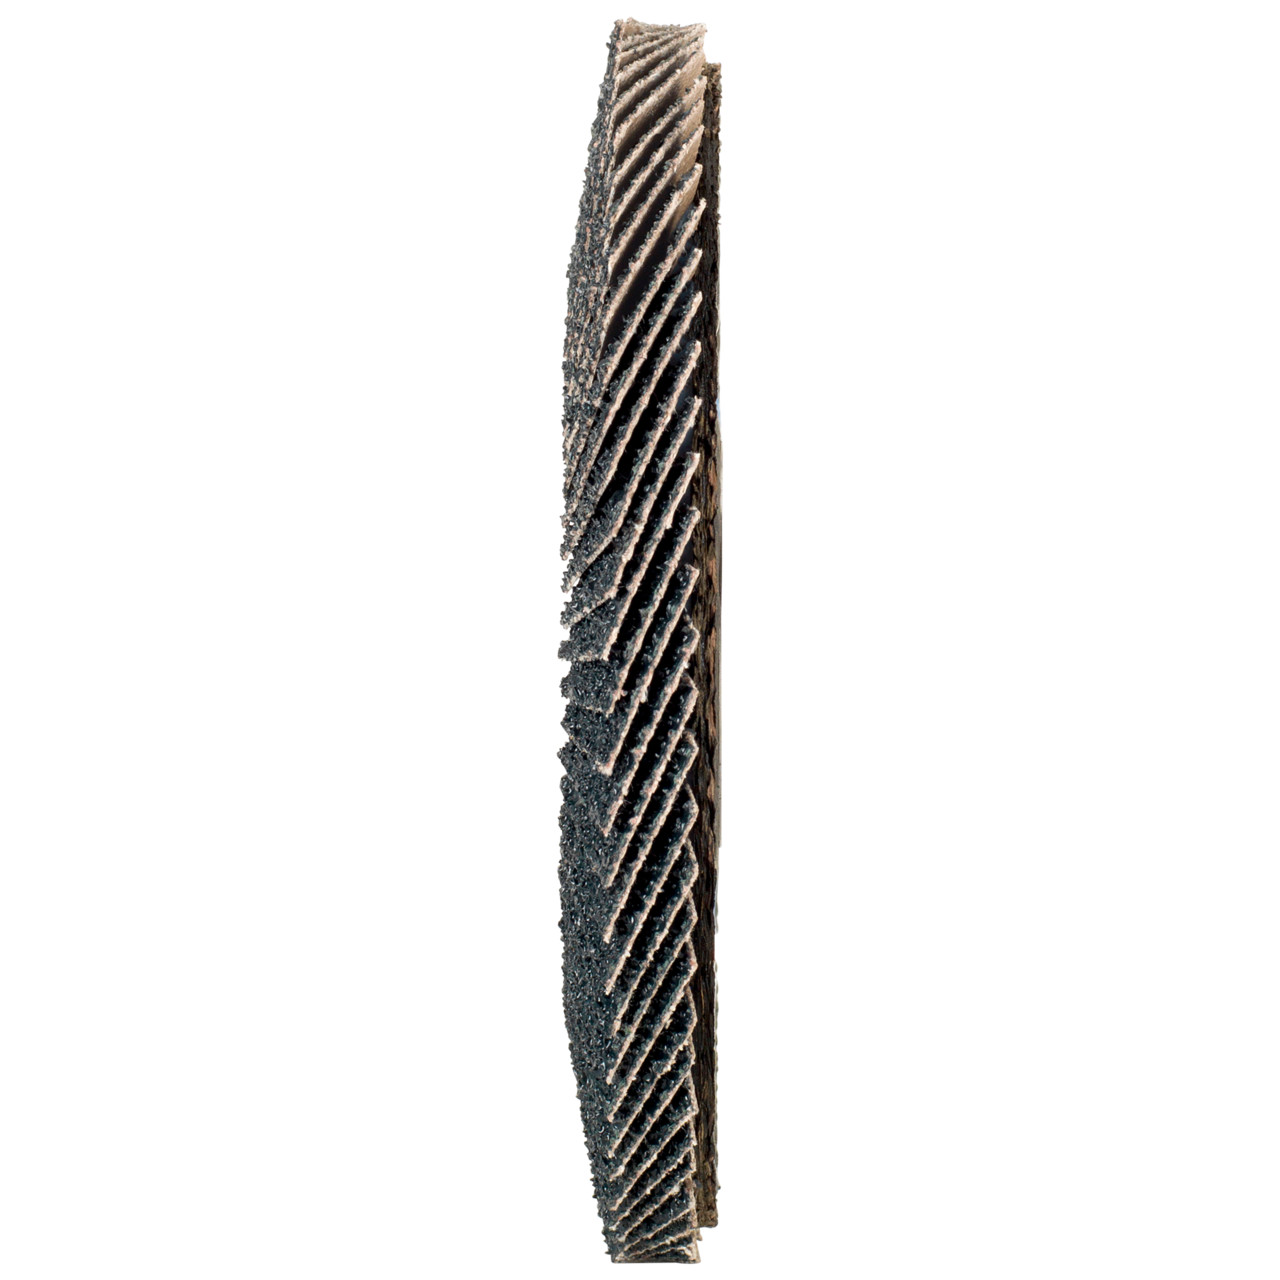 Rondella dentata Tyrolit DxH 150x22.2 2in1 per acciaio e acciaio inox, P40, forma: 27A - versione offset (versione con corpo portante in fibra di vetro), Art. 519212